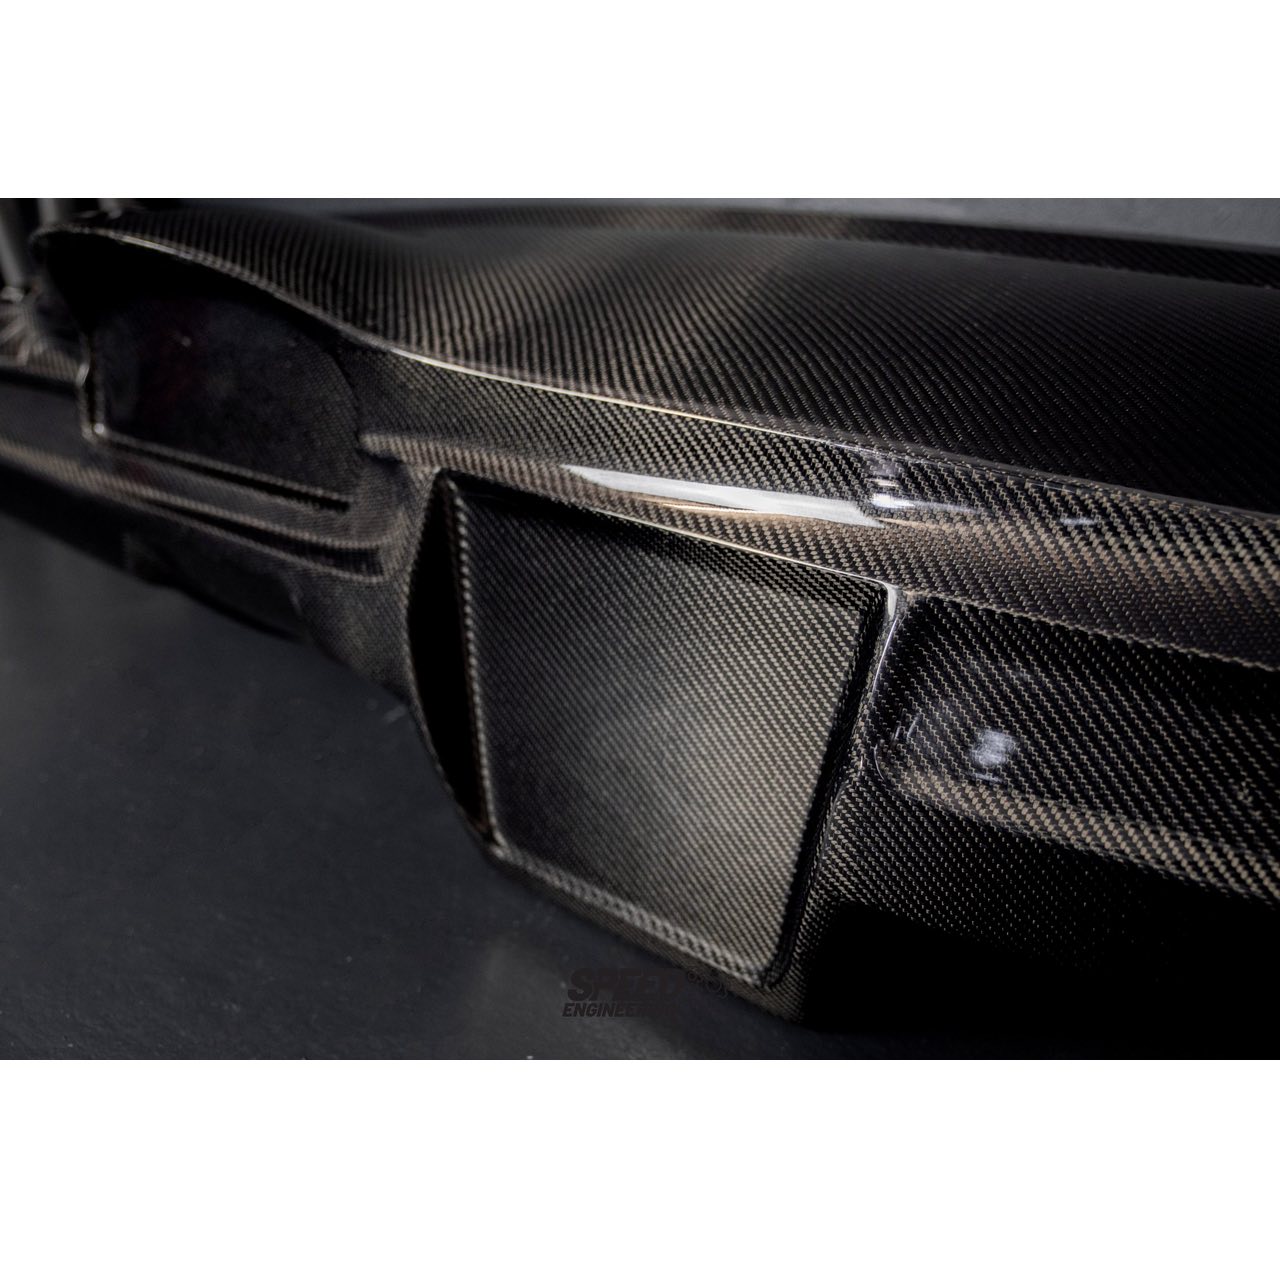 Armaturenbrett aus Kohlefaser passend für BMW E9x inkl. M3 » Burkhart  Engineering